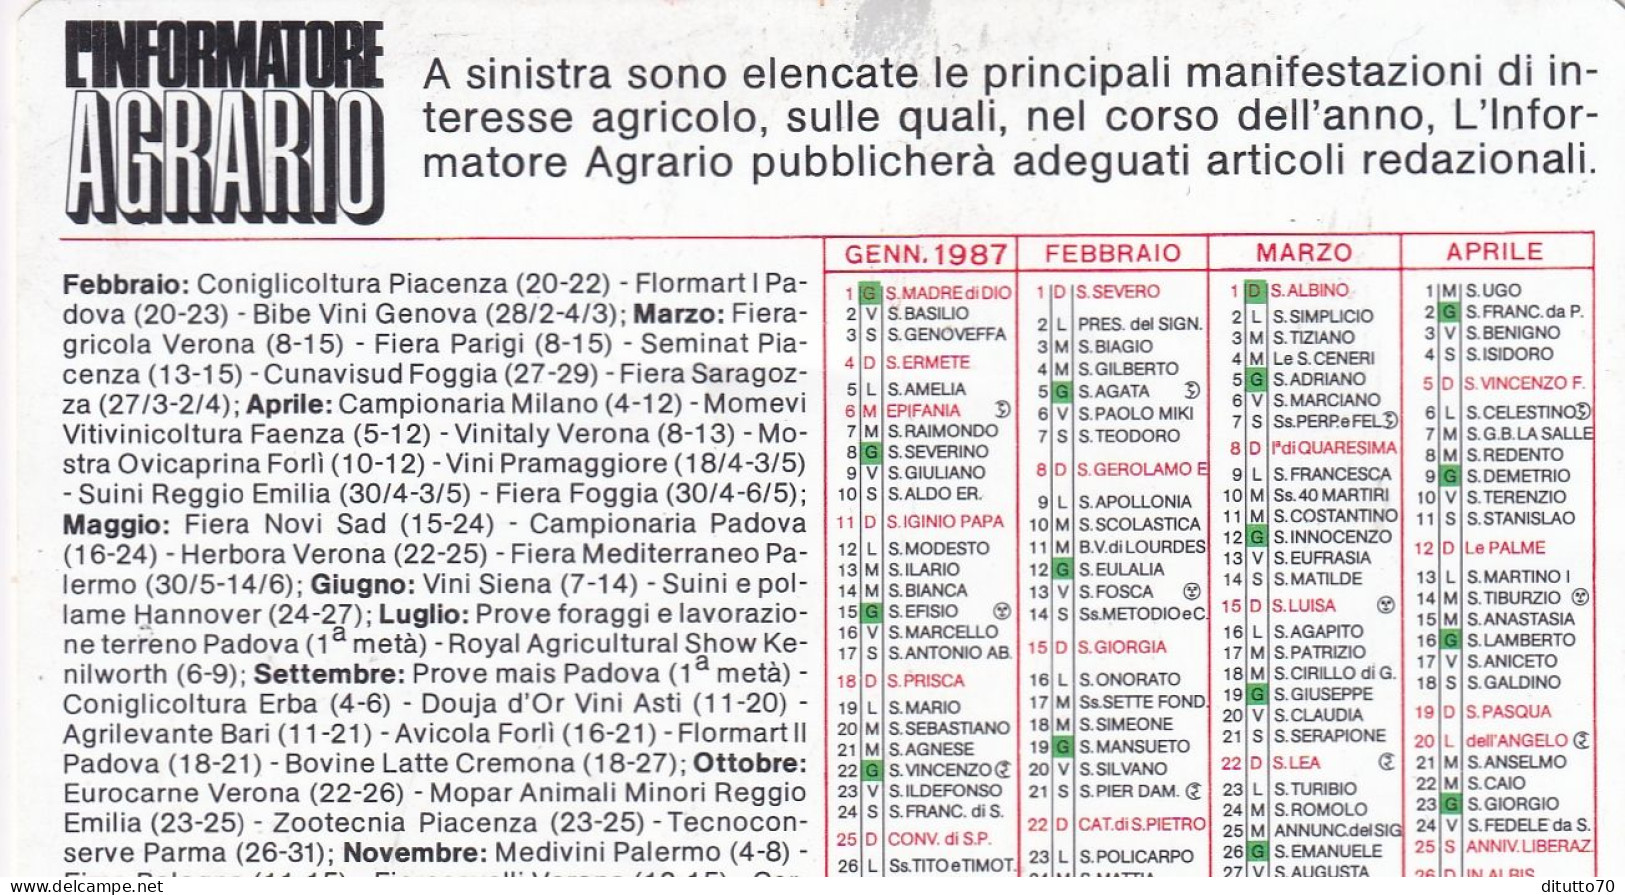 Calendarietto - L'informatore Agrario - Anno 1987 - Small : 1981-90